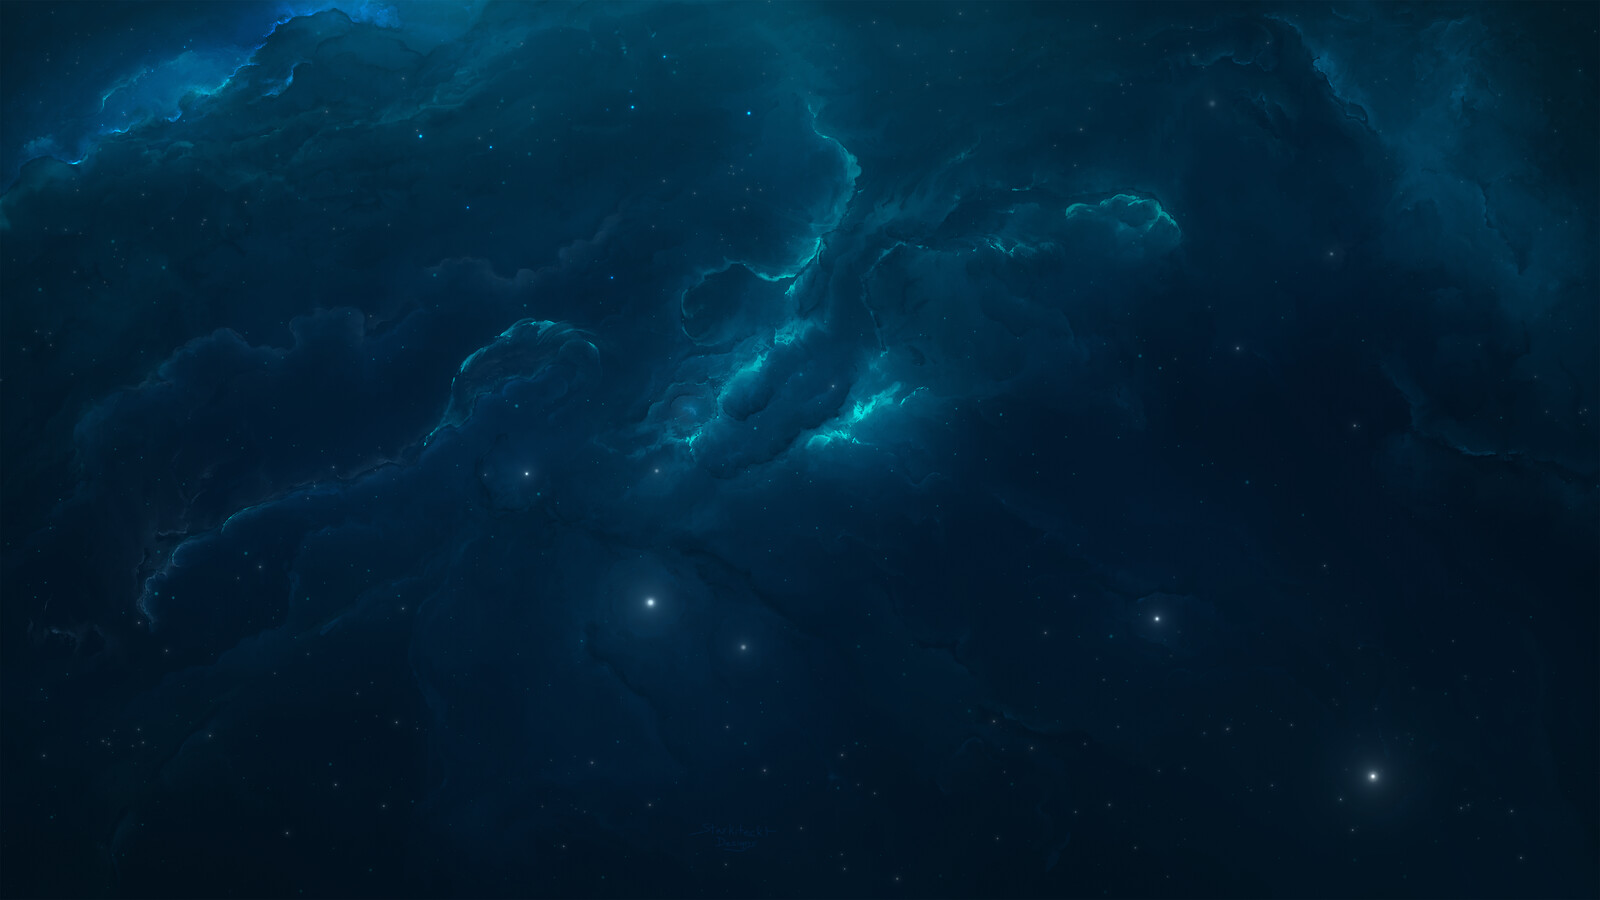 Atlantis Nebula 16